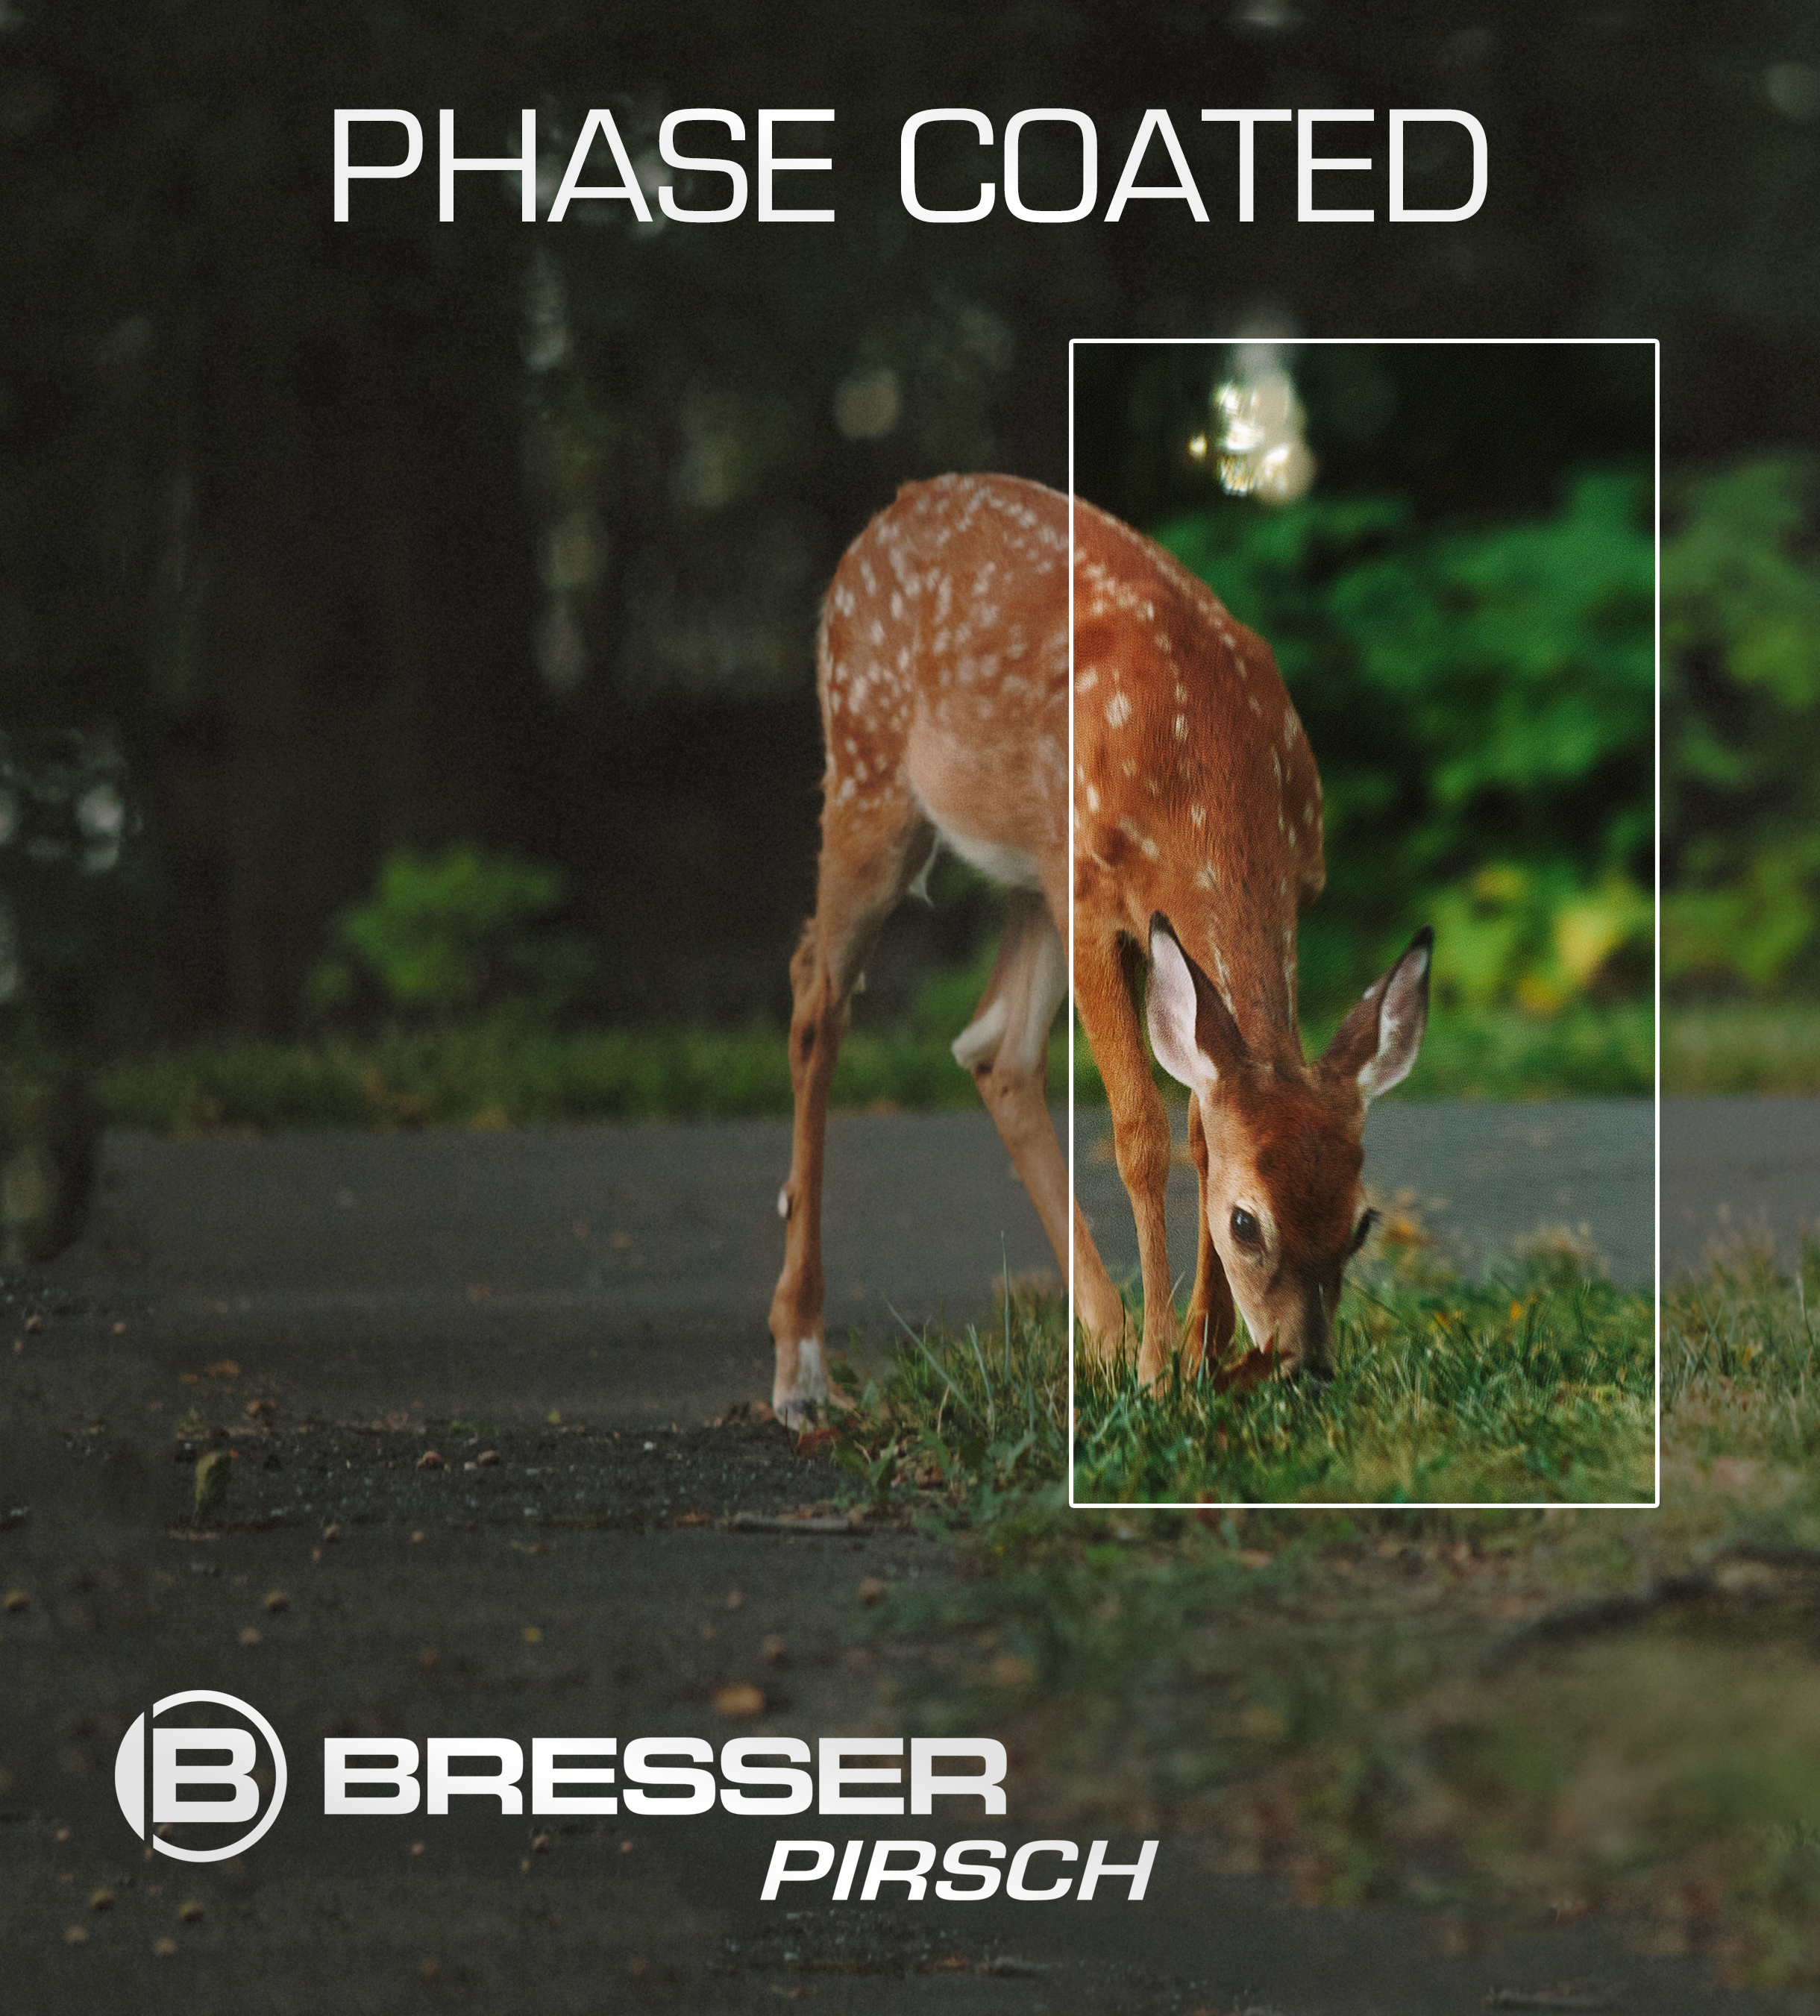 BRESSER Pirsch jumelles 8x34 Phase Coating